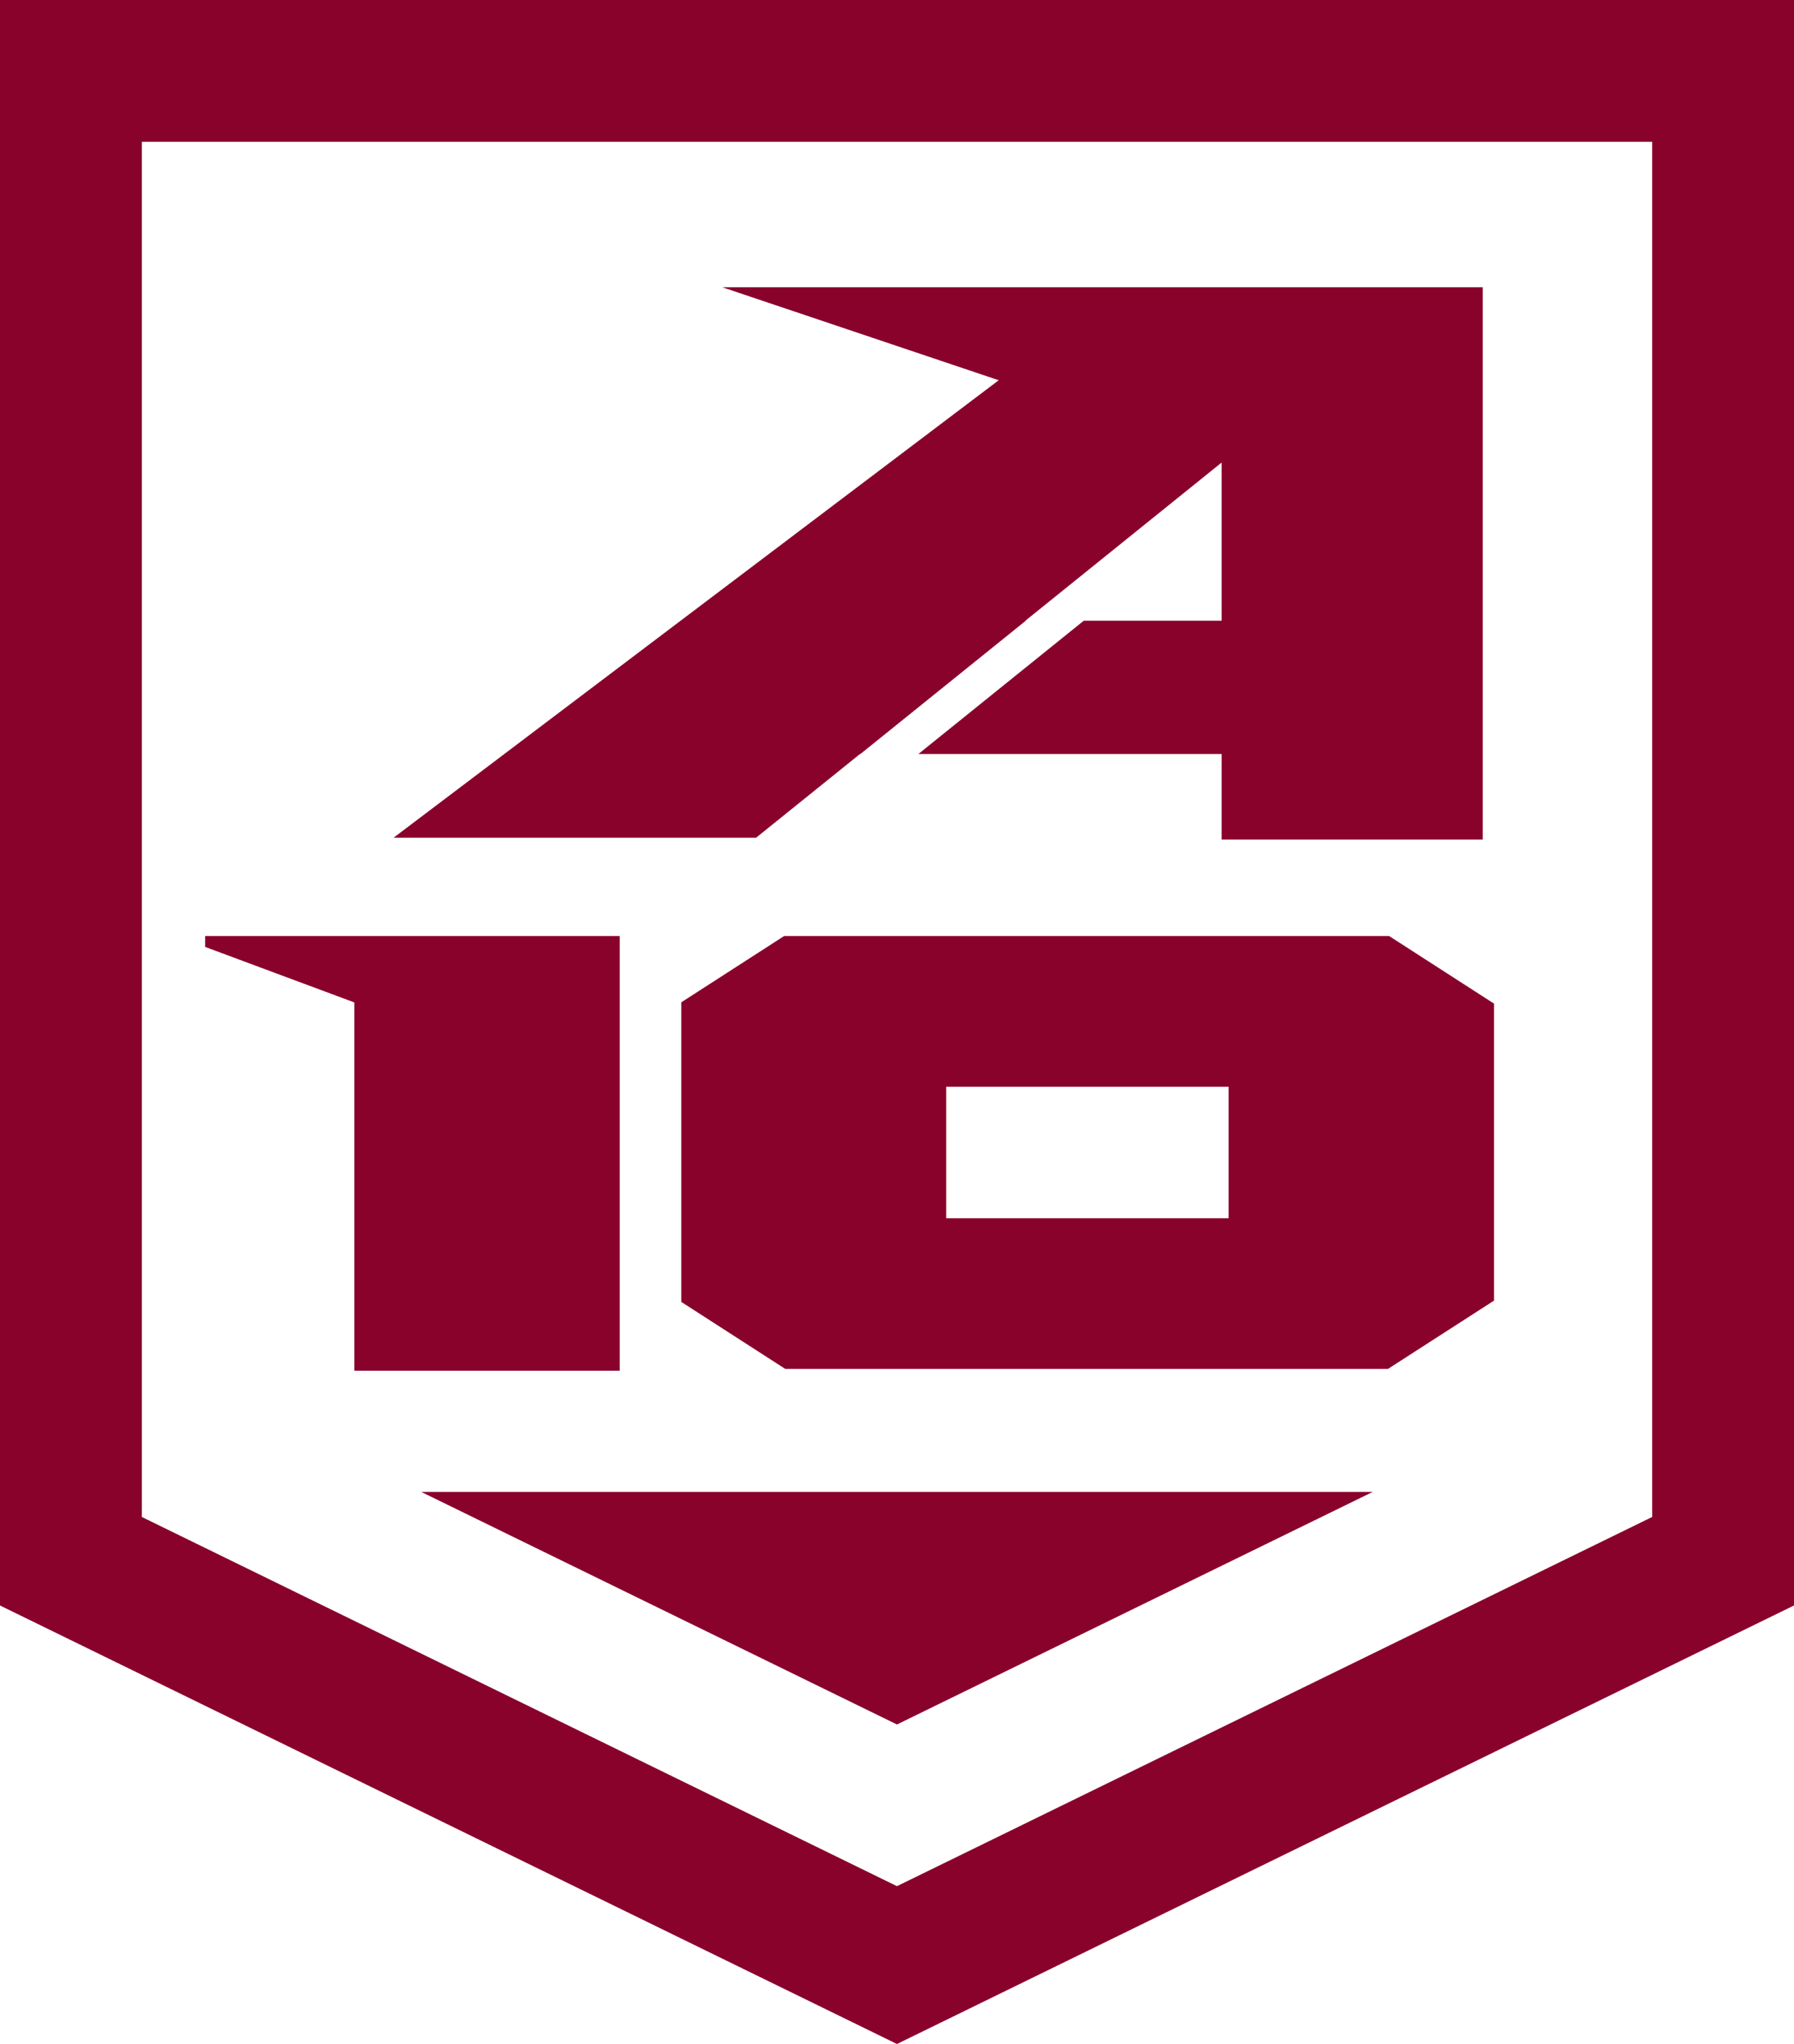 Atlantic 10 Conference Shield in Fordham Logo